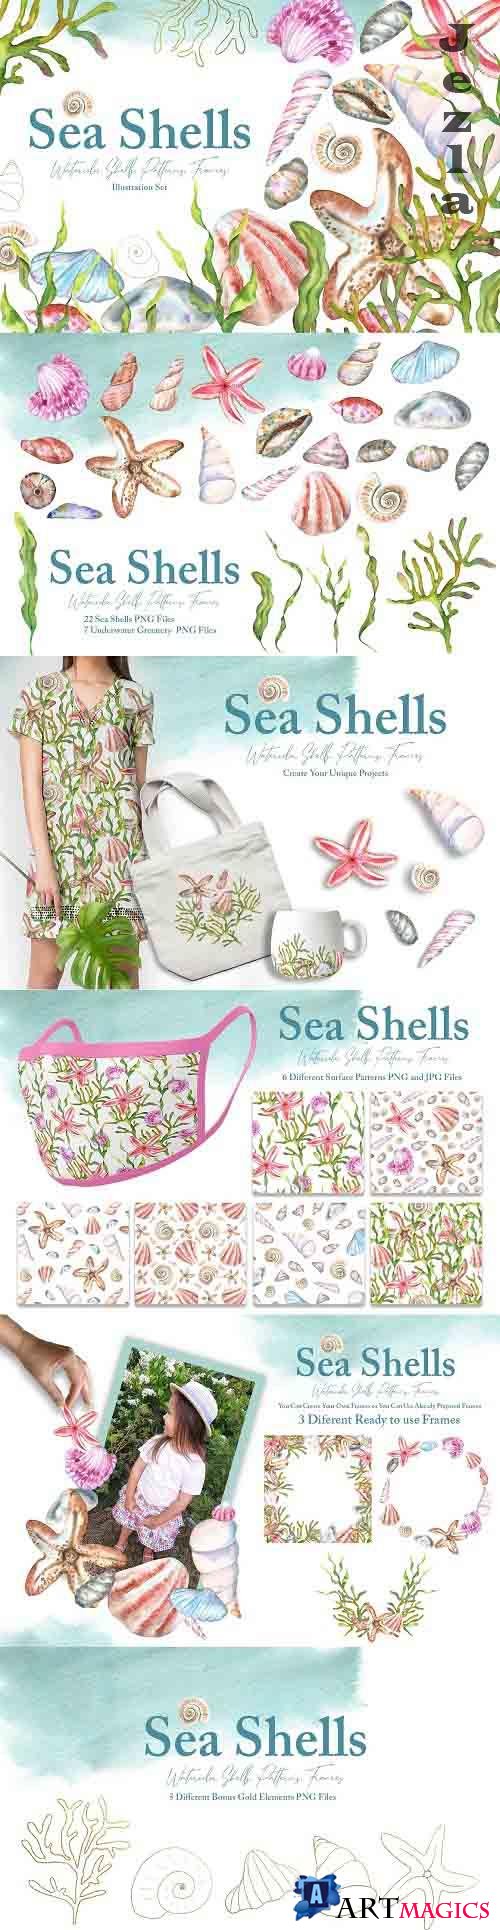 Watercolor Sea Shells Illustrations - 6181957